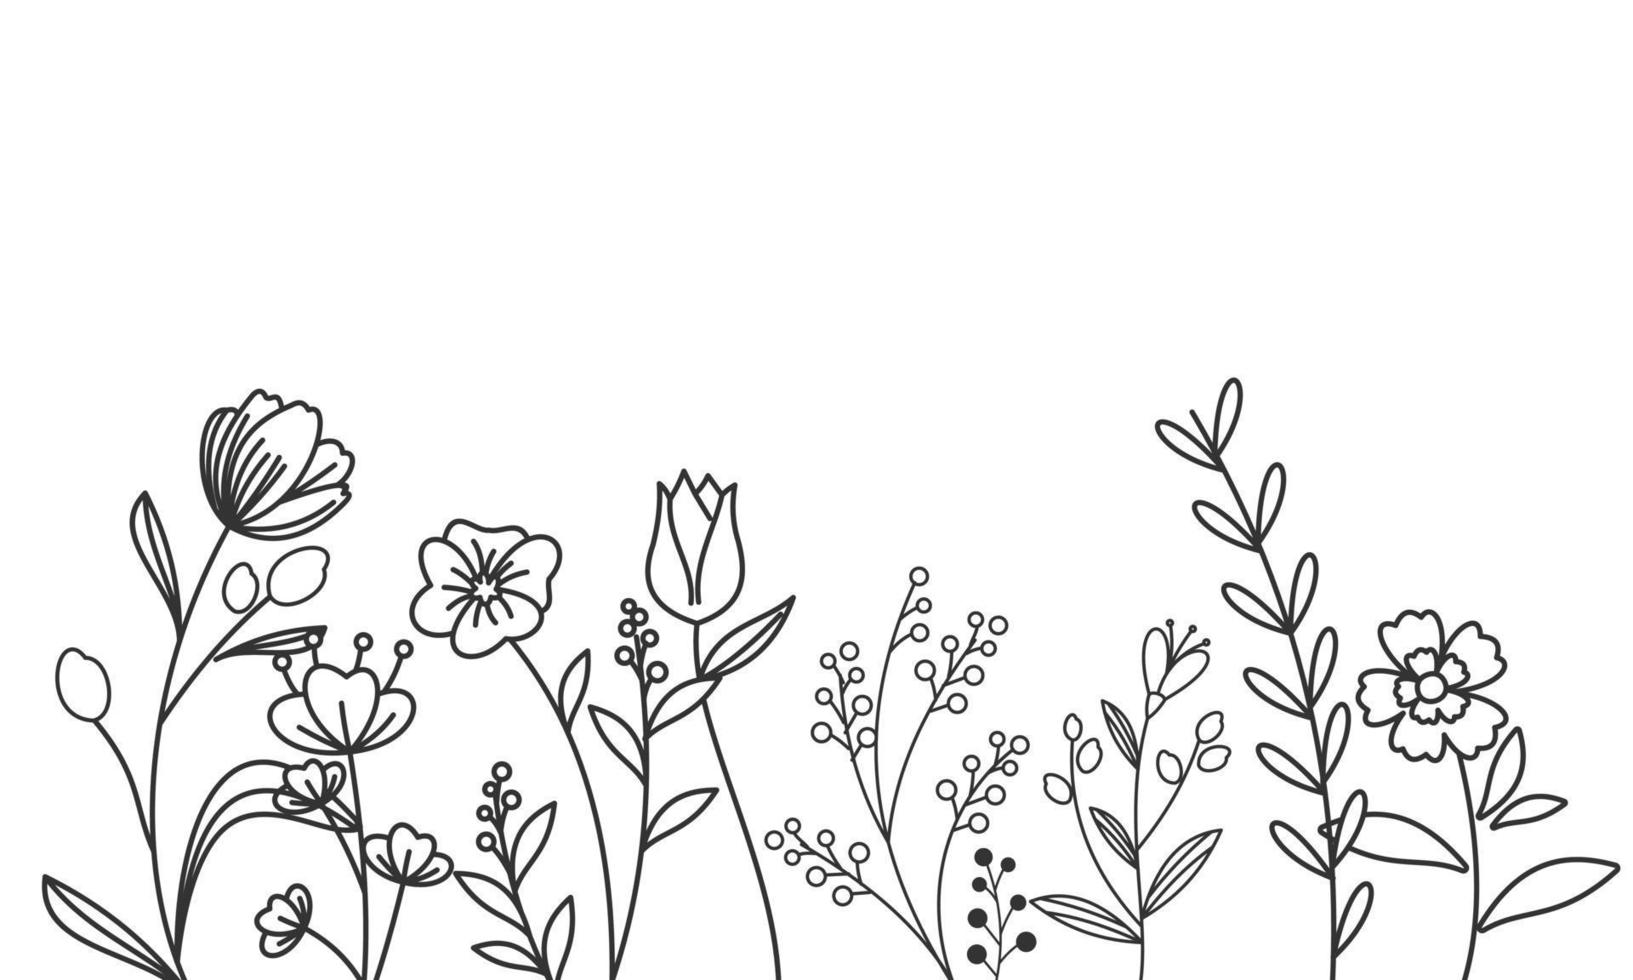 noir silhouettes de herbe, fleurs et herbes isolé sur blanc Contexte vecteur